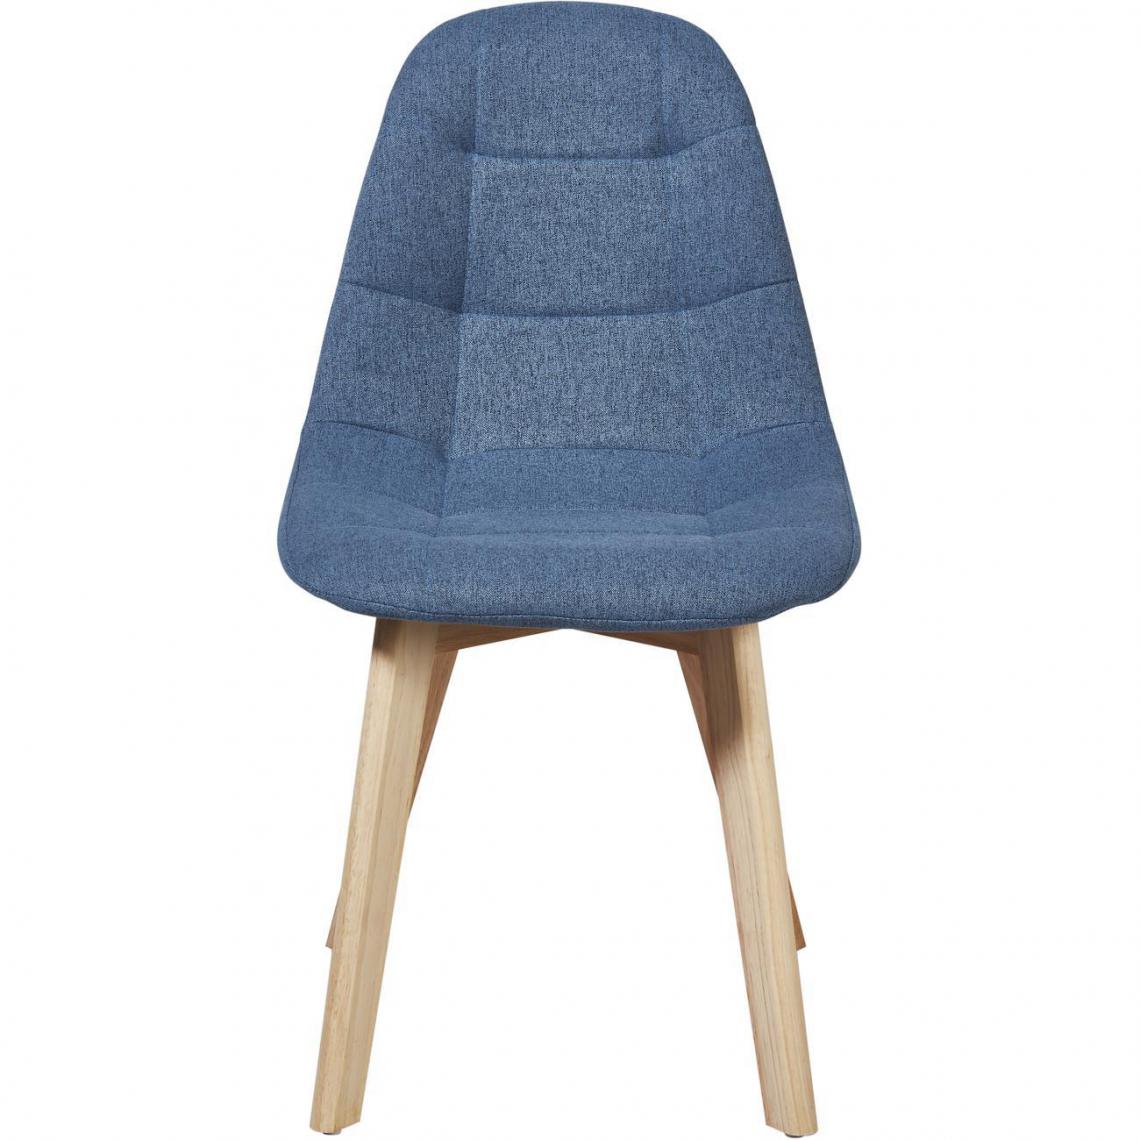 ATHM DESIGN - Lot de 4 - Chaise SULTA Bleu Canard - assise Tissu pieds Bois - Chaises